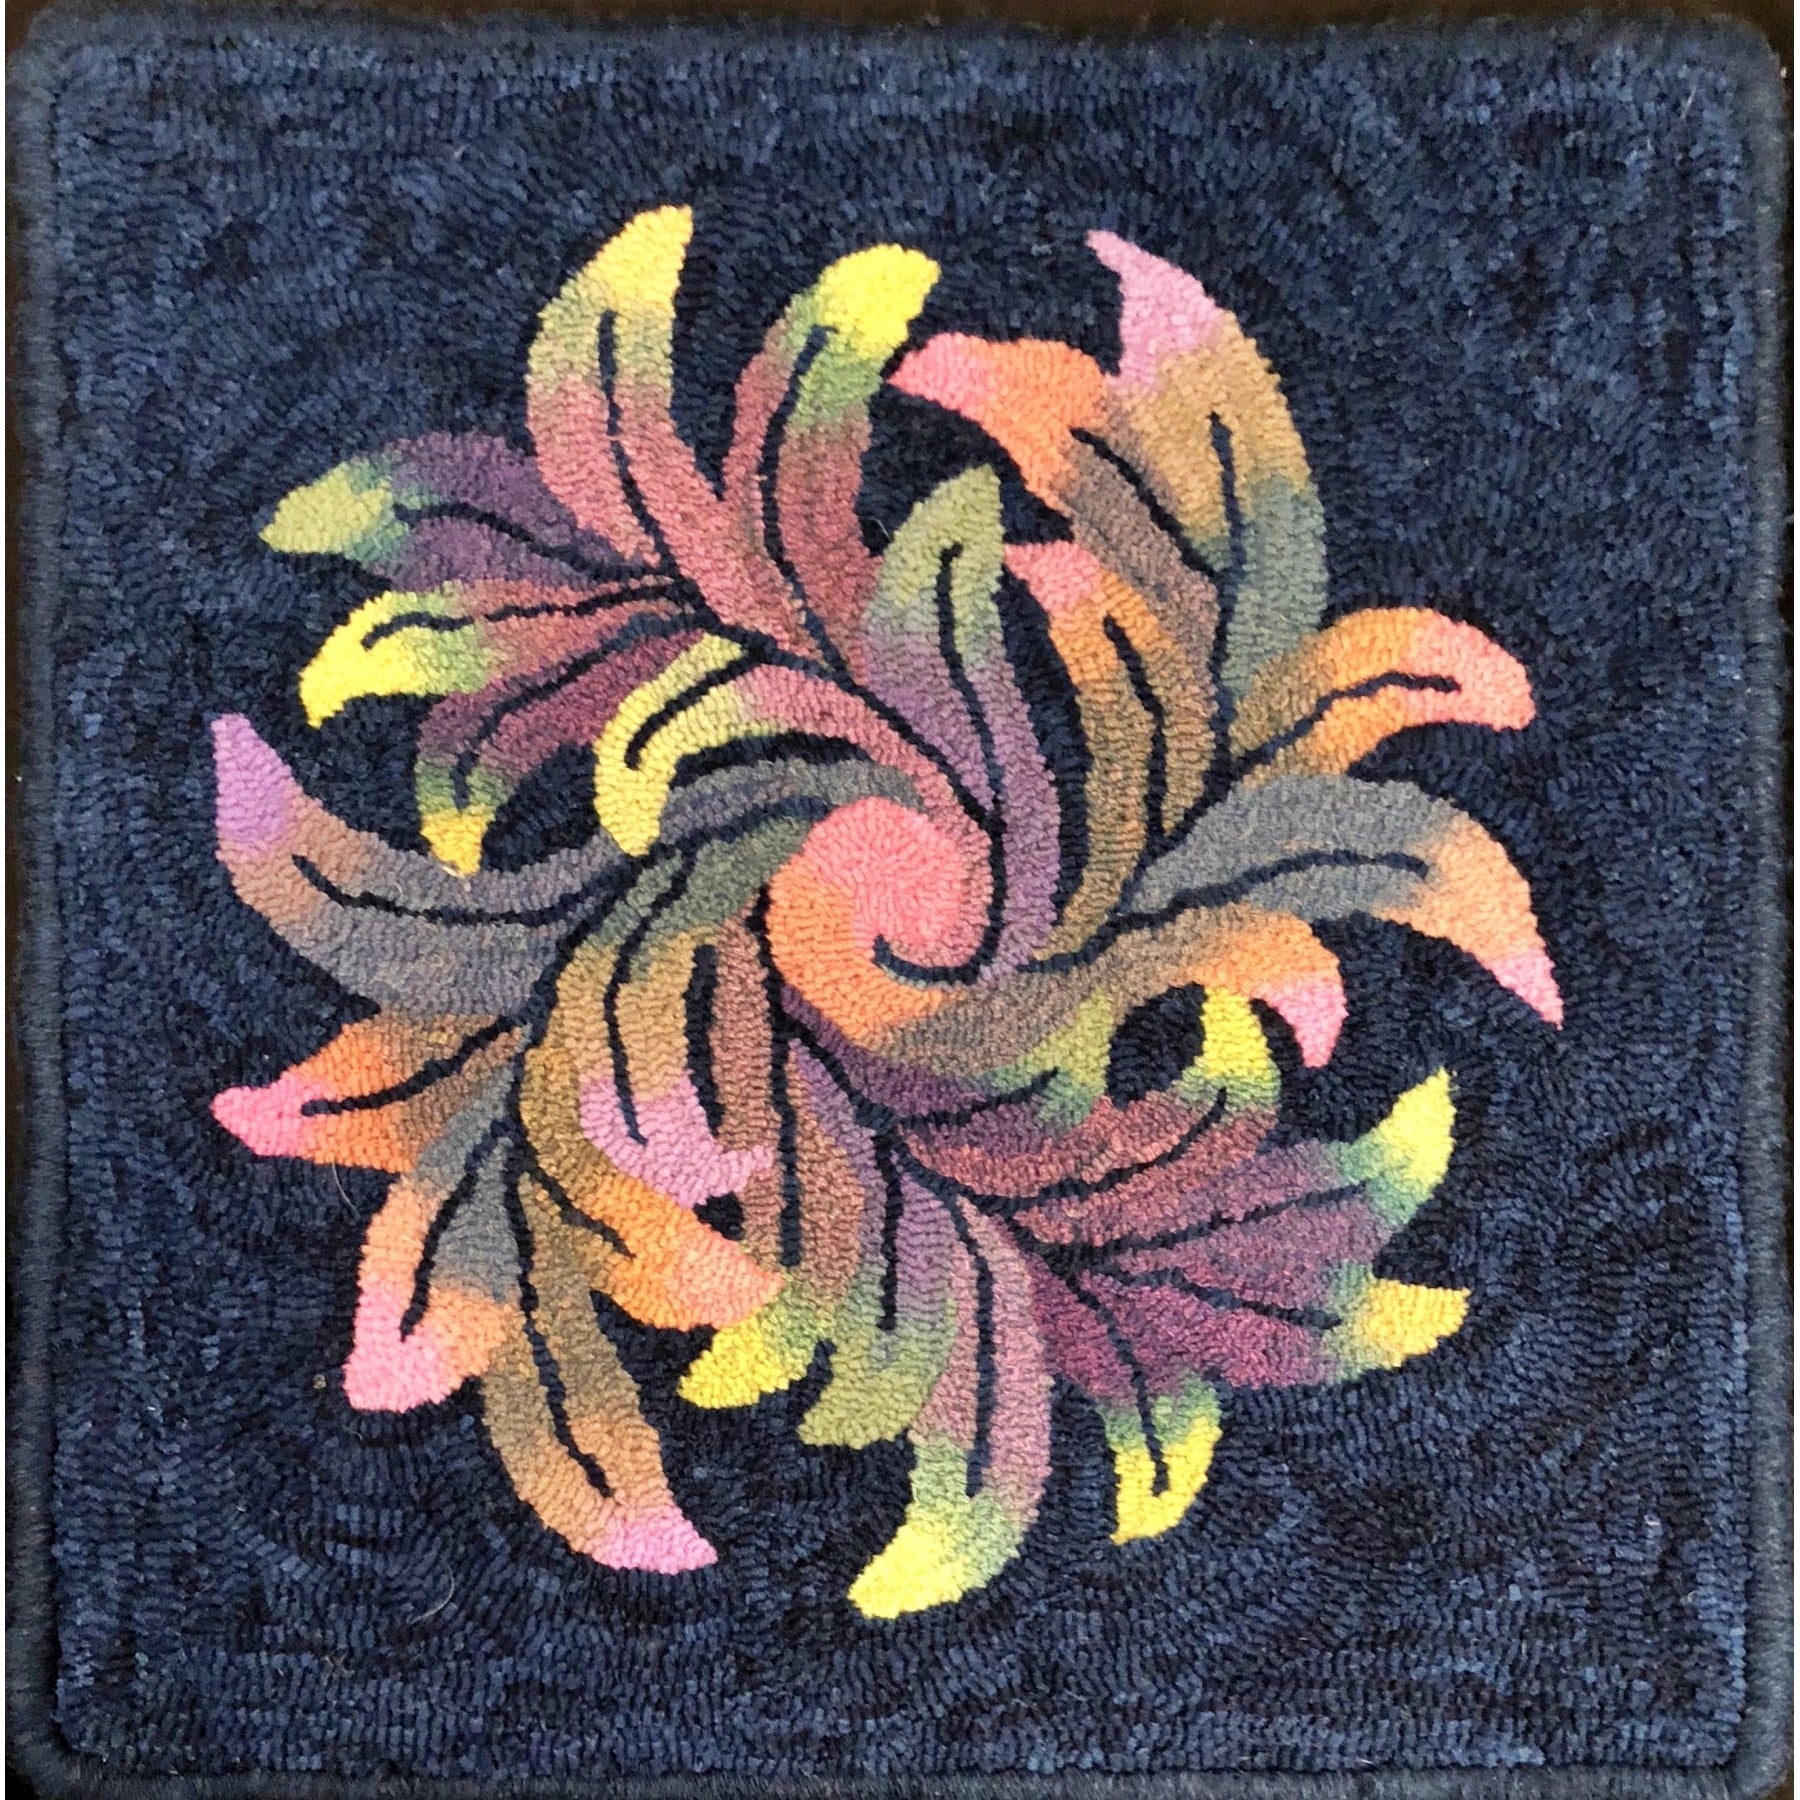 Pinwheel Scroll, rug hooked by Diane Thiese